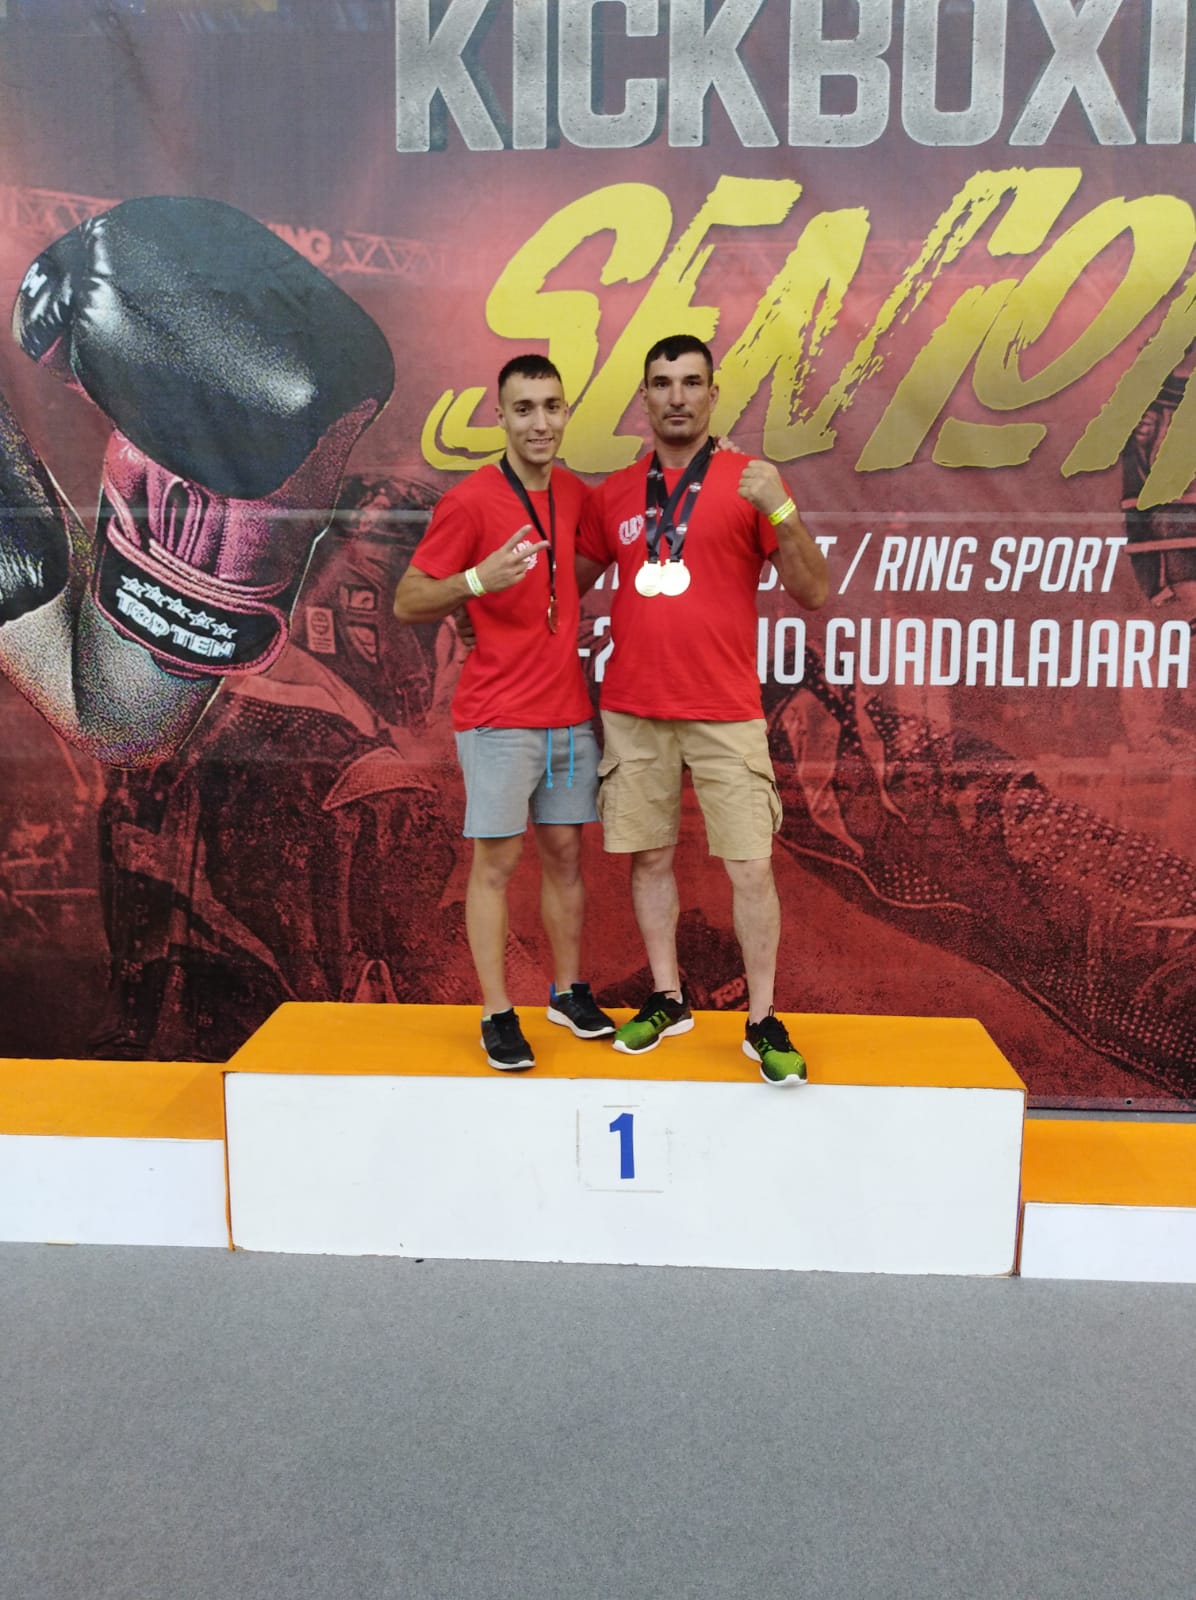 Kick Boxing F.E.K.M.: Sergio de Diego y Valerica Chiuda, 3 oros en el Campeonato de España